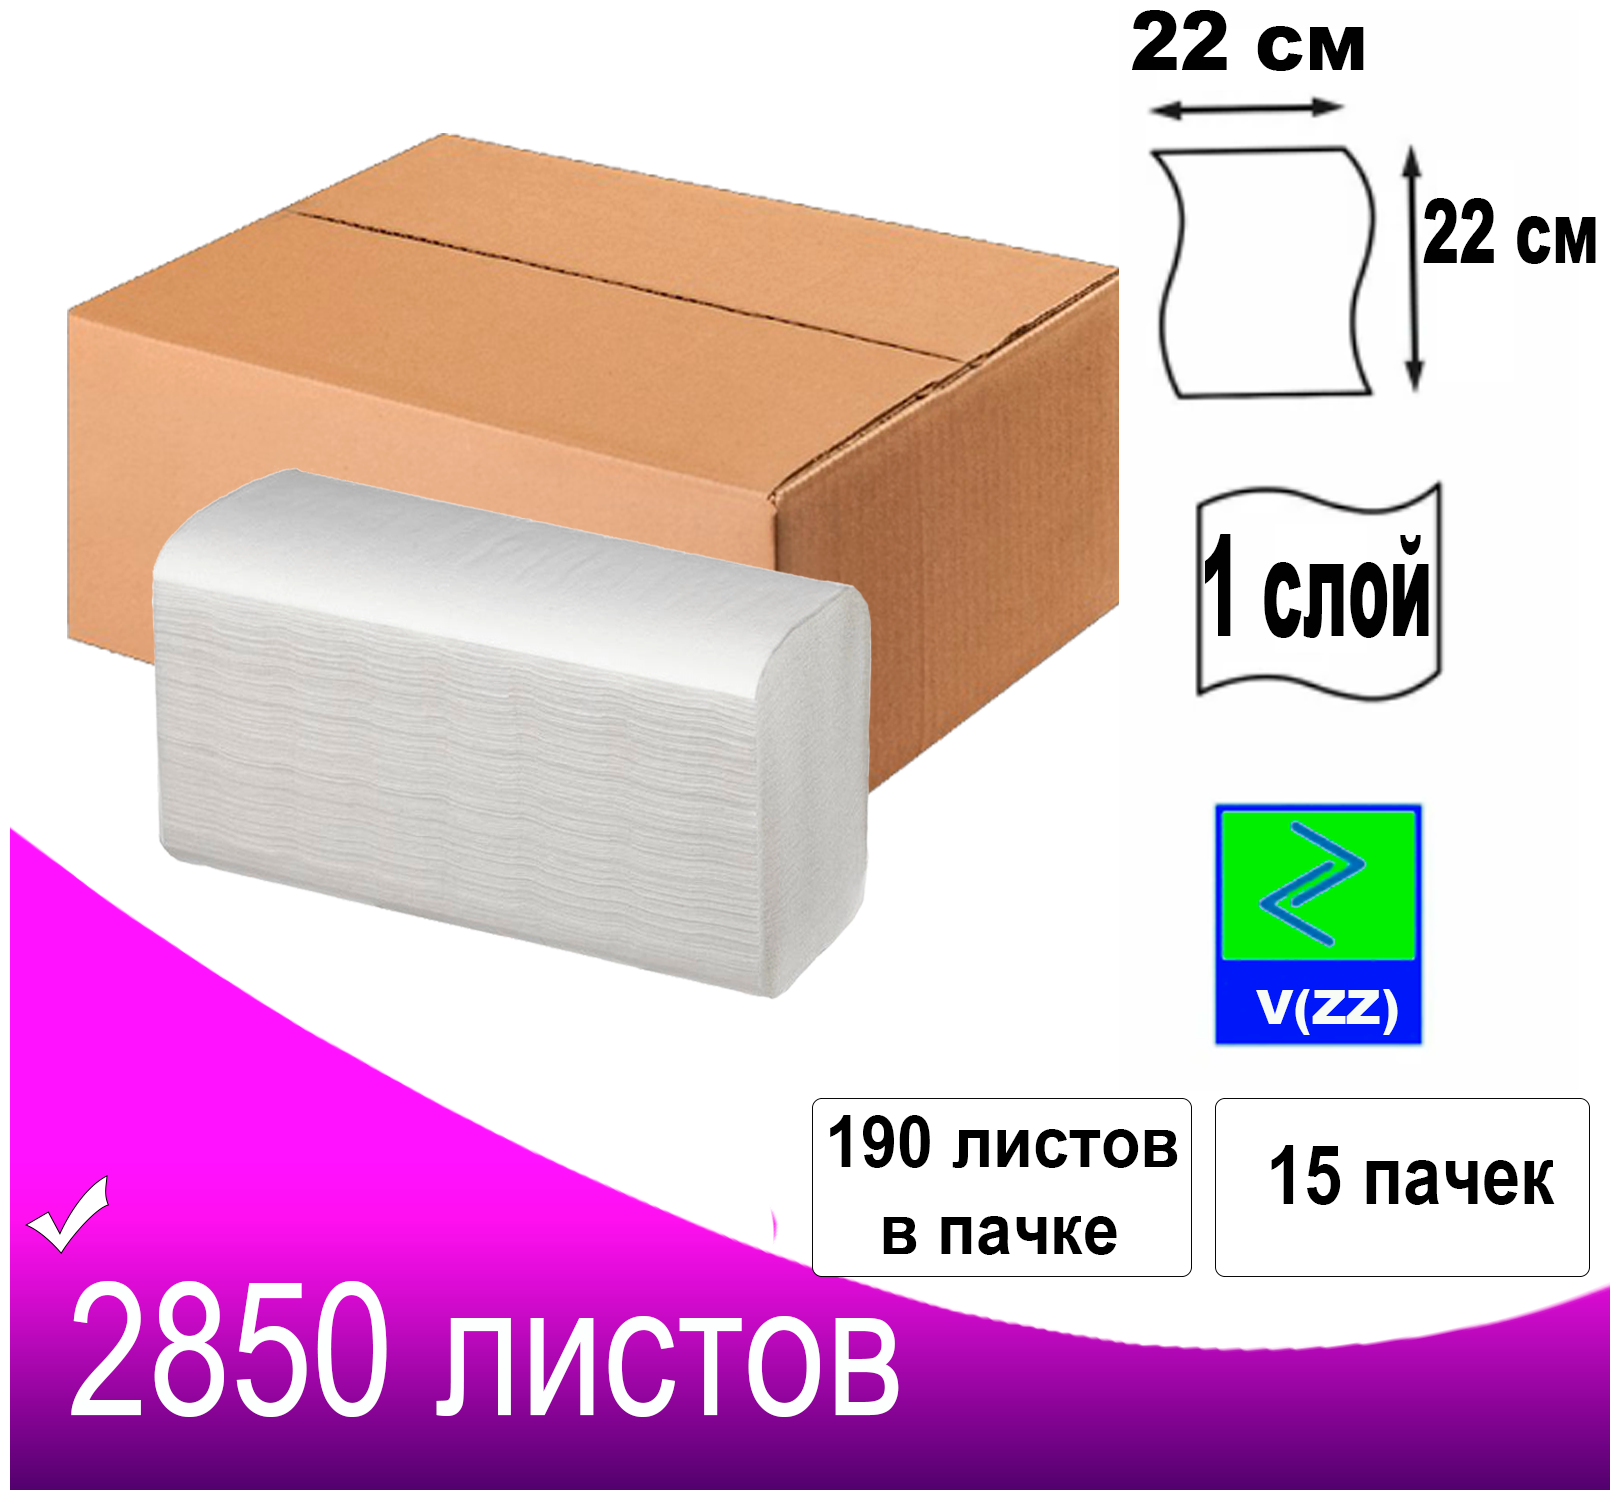 Полотенца бумажные листовые V ZZ сложения 3000 листов белые 1-слойные/15 пачек в коробке/в пачке 200 листов/д/диспенсера Н3/размер 22х22см